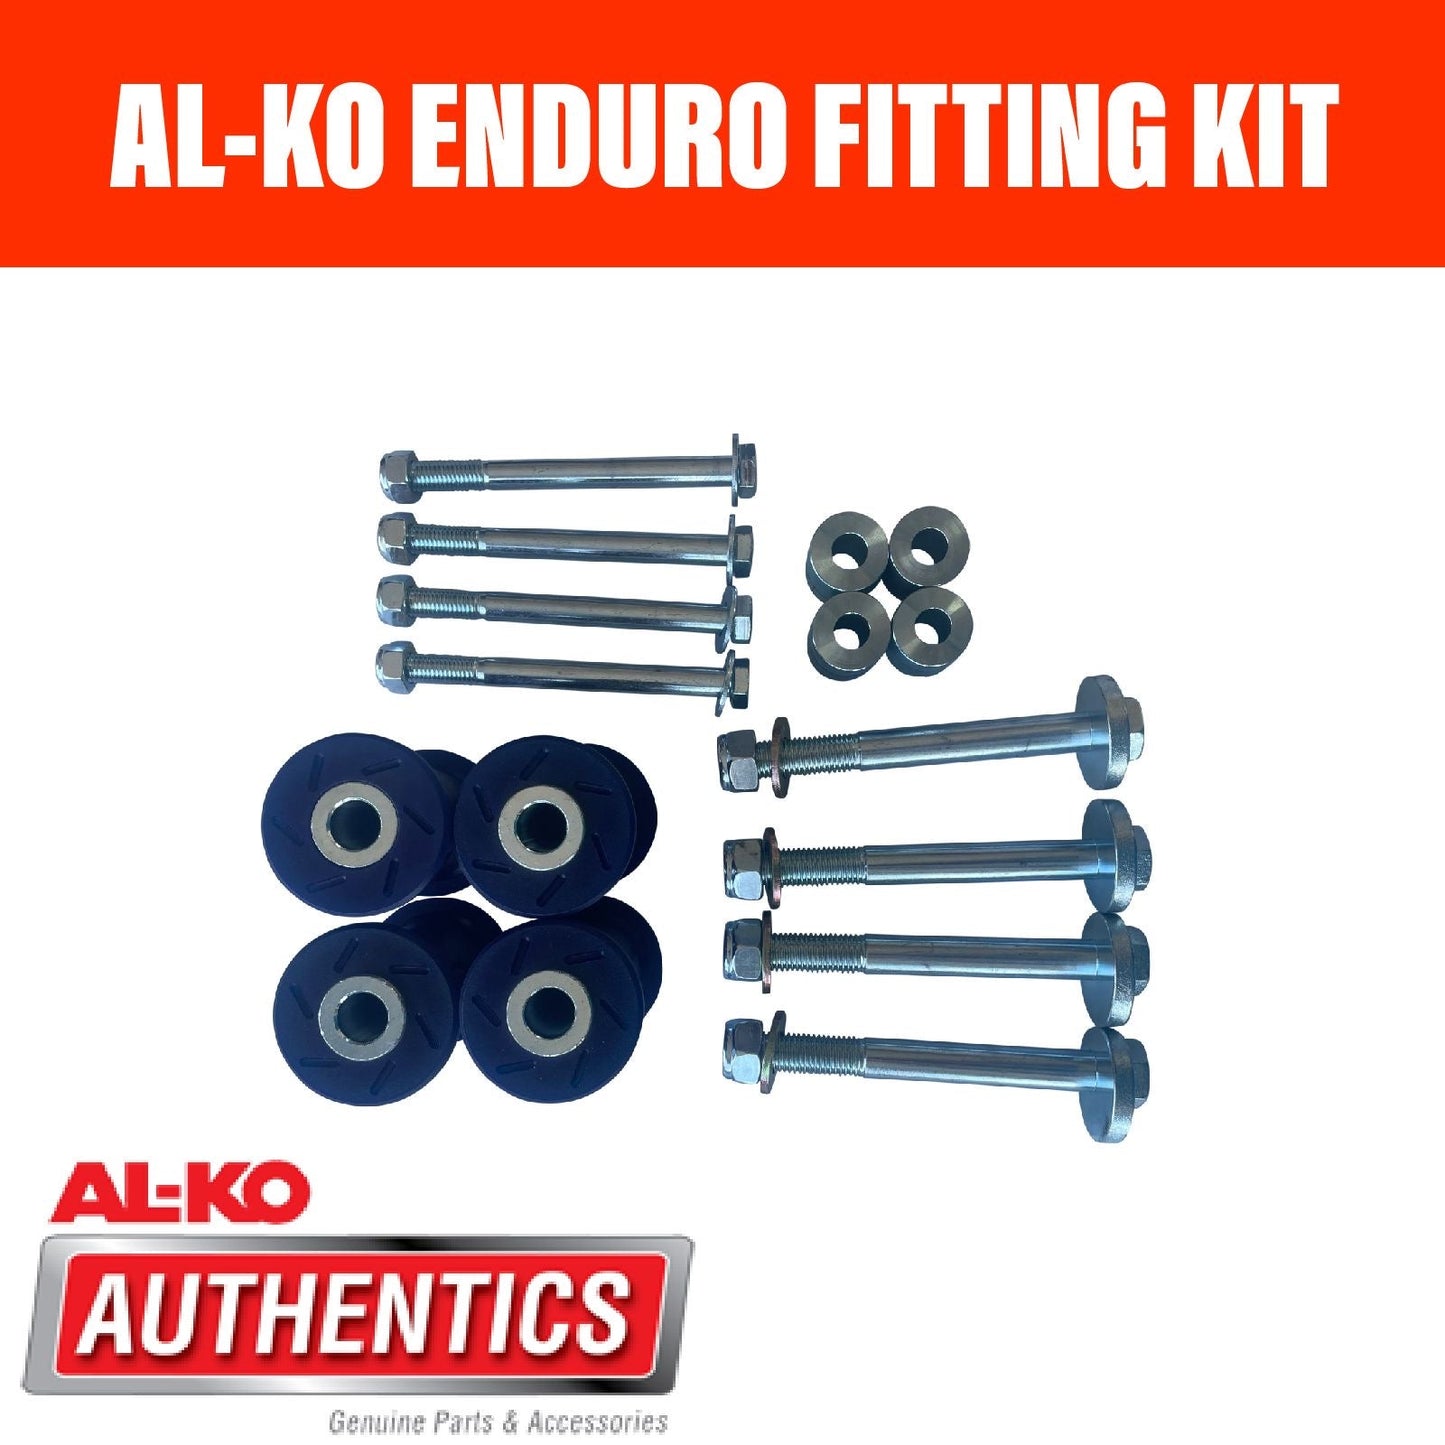 AL-KO ENDURO Fitting Kit